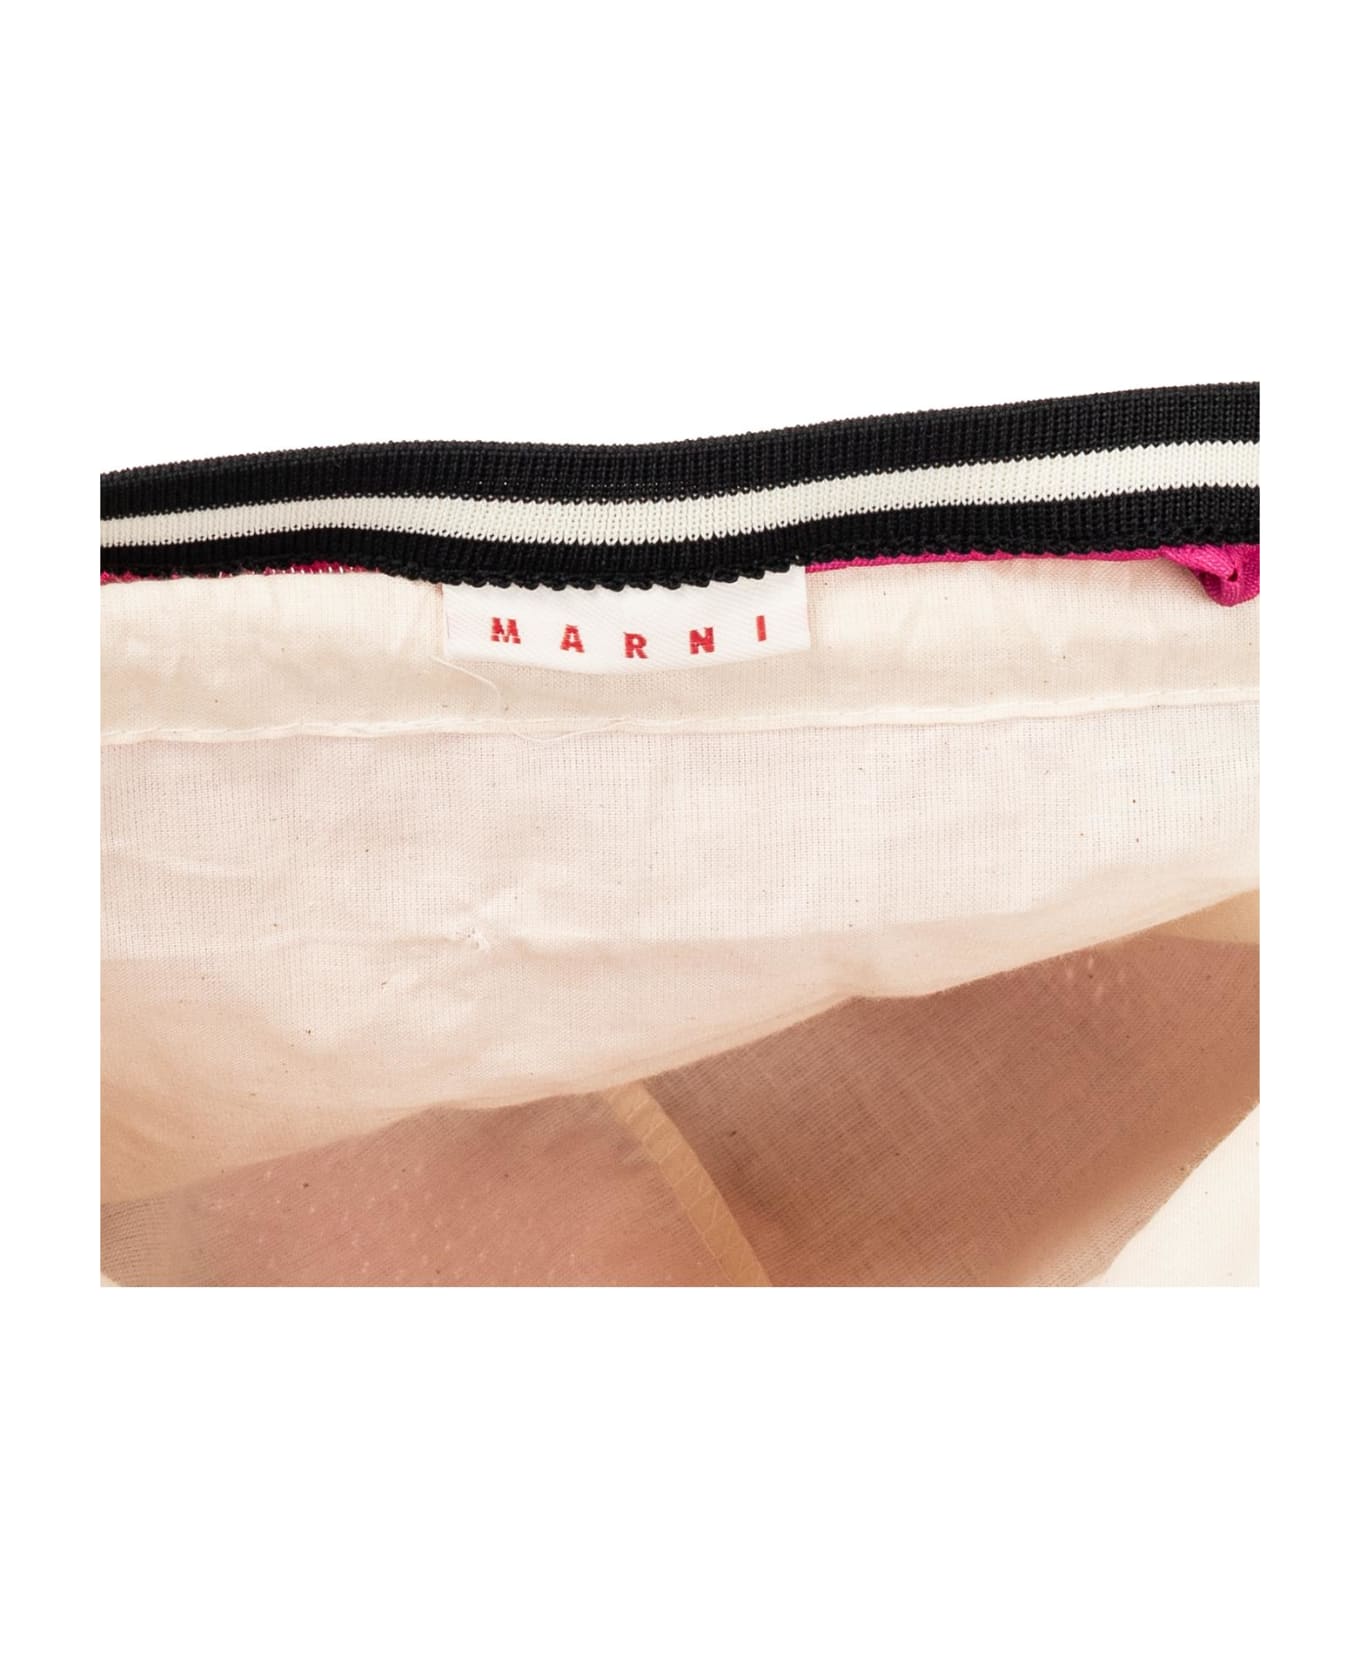 Marni Shopper Bag With Logo Marni